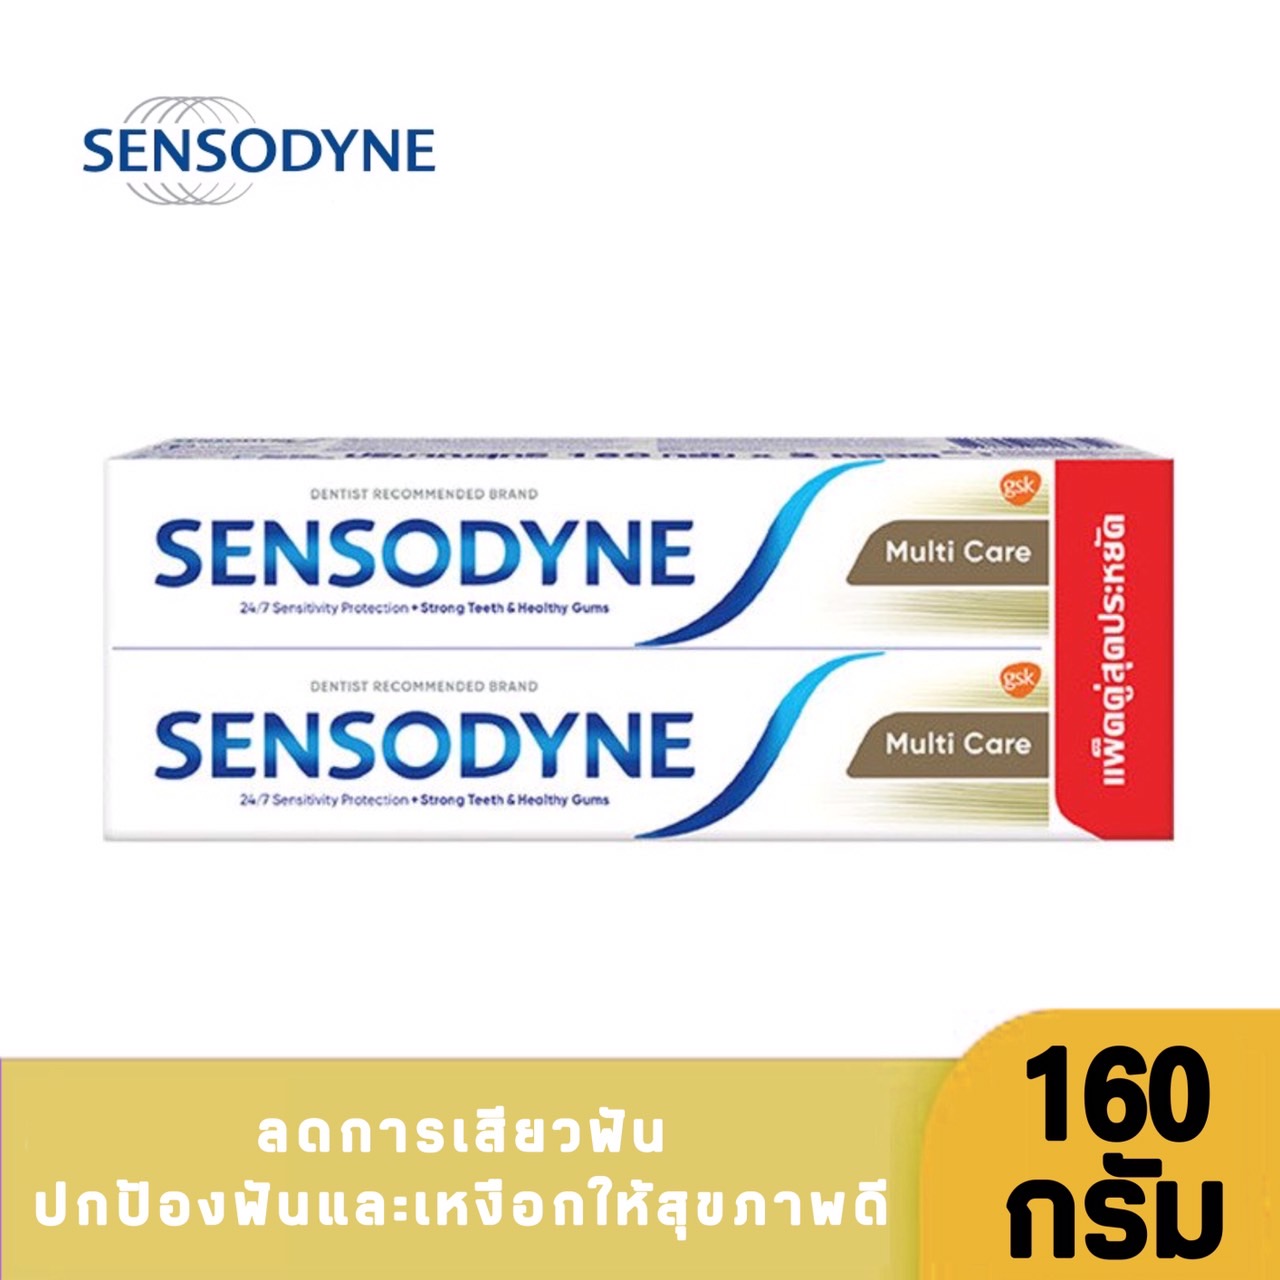 ซื้อที่ไหน (แพ็คคู่)Sensodyne เซ็นโซดายน์ ยาสีฟัน สูตรมัลติ แคร์ 160 กรัม ช่วยลดอาการเสียวฟัน ช่วยให้ฟันแข็งแรงและป้องกันฟันผุ